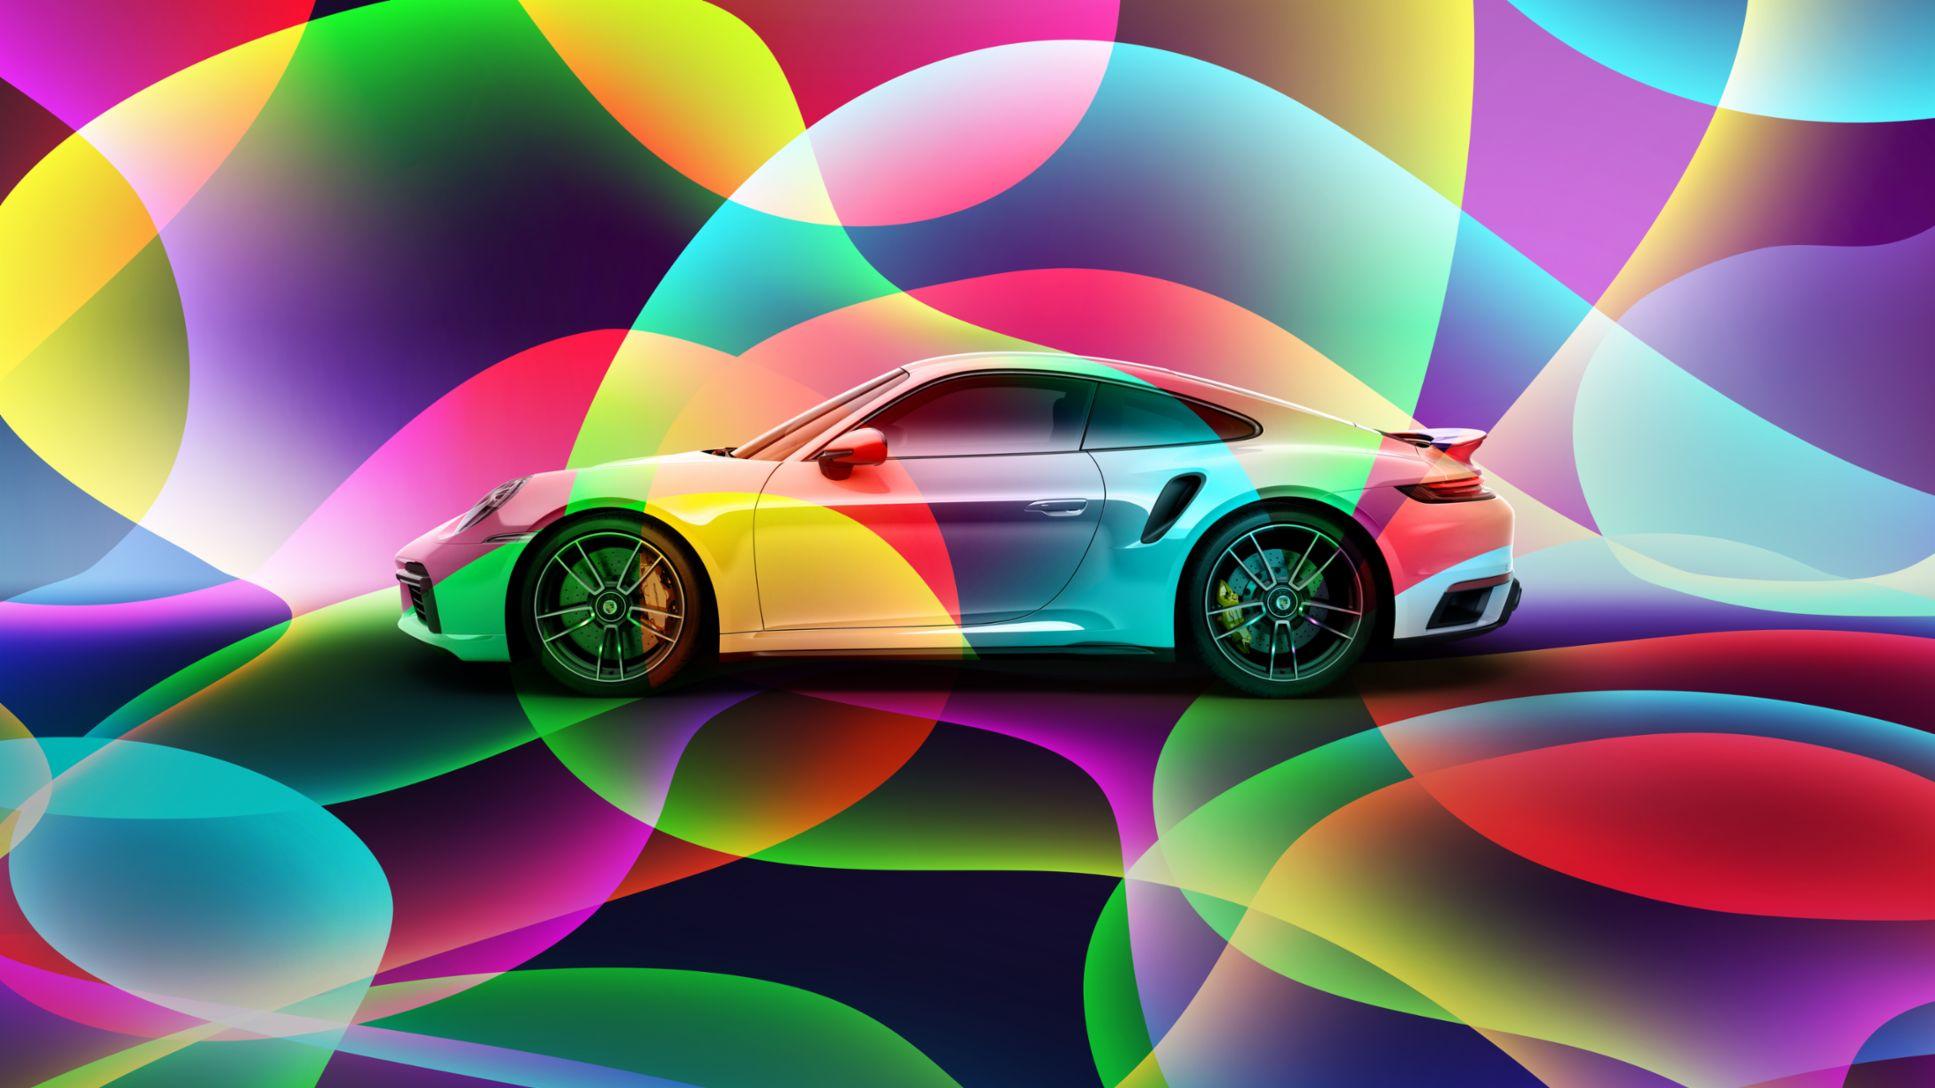 Technicolour Dreamscape Using Paint To Expand The Porsche Story